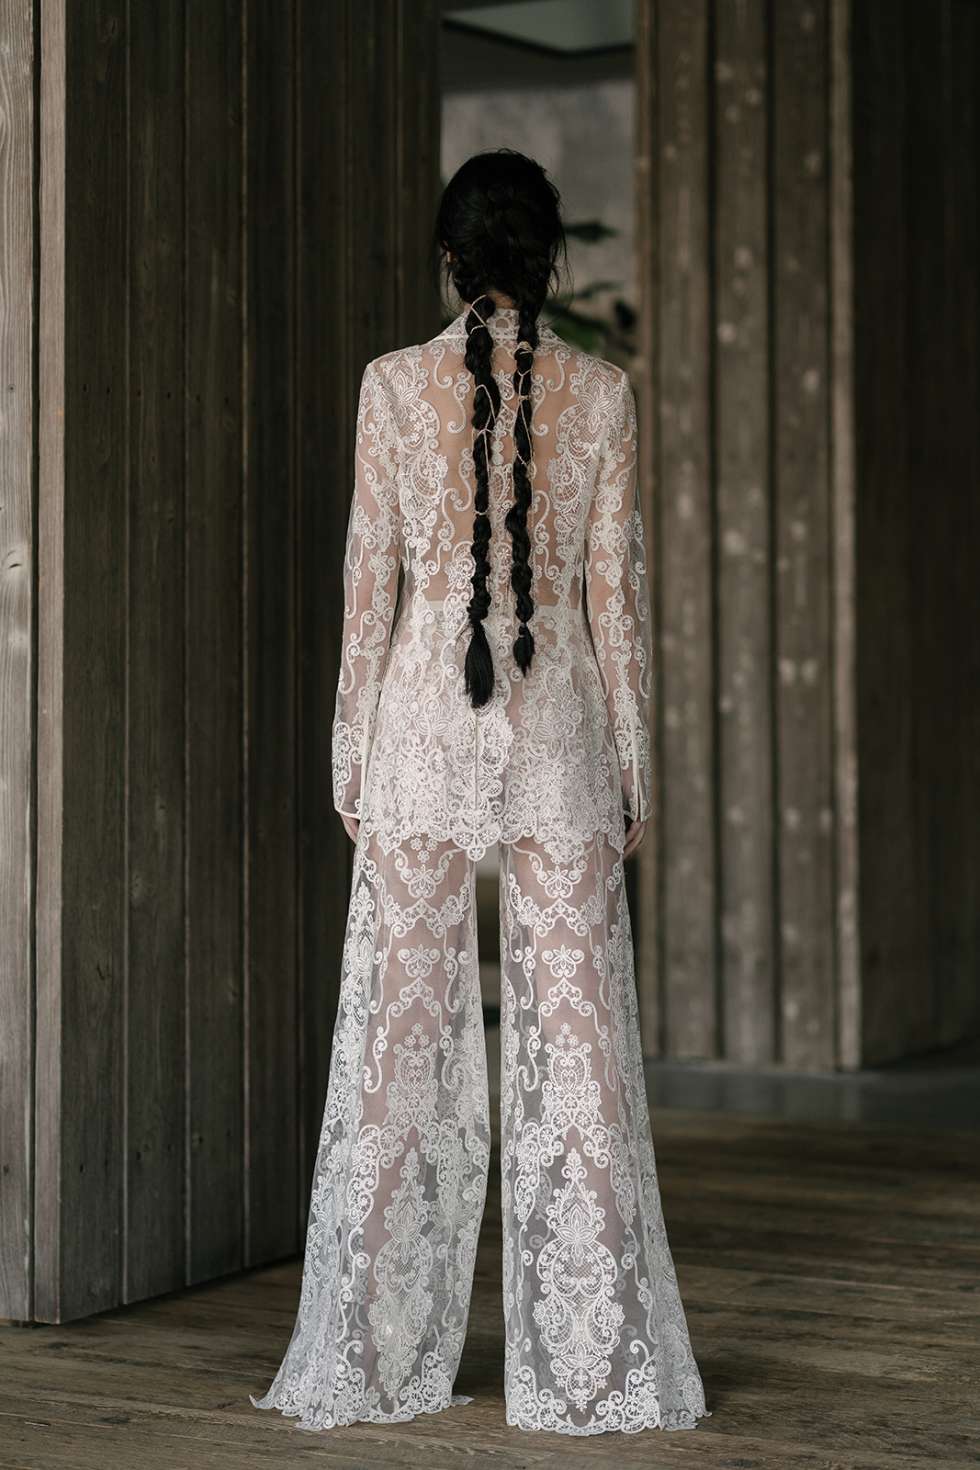 مجموعة فساتين زفاف ريفيني لعام 2019 من تصميم ريتا فينيريس